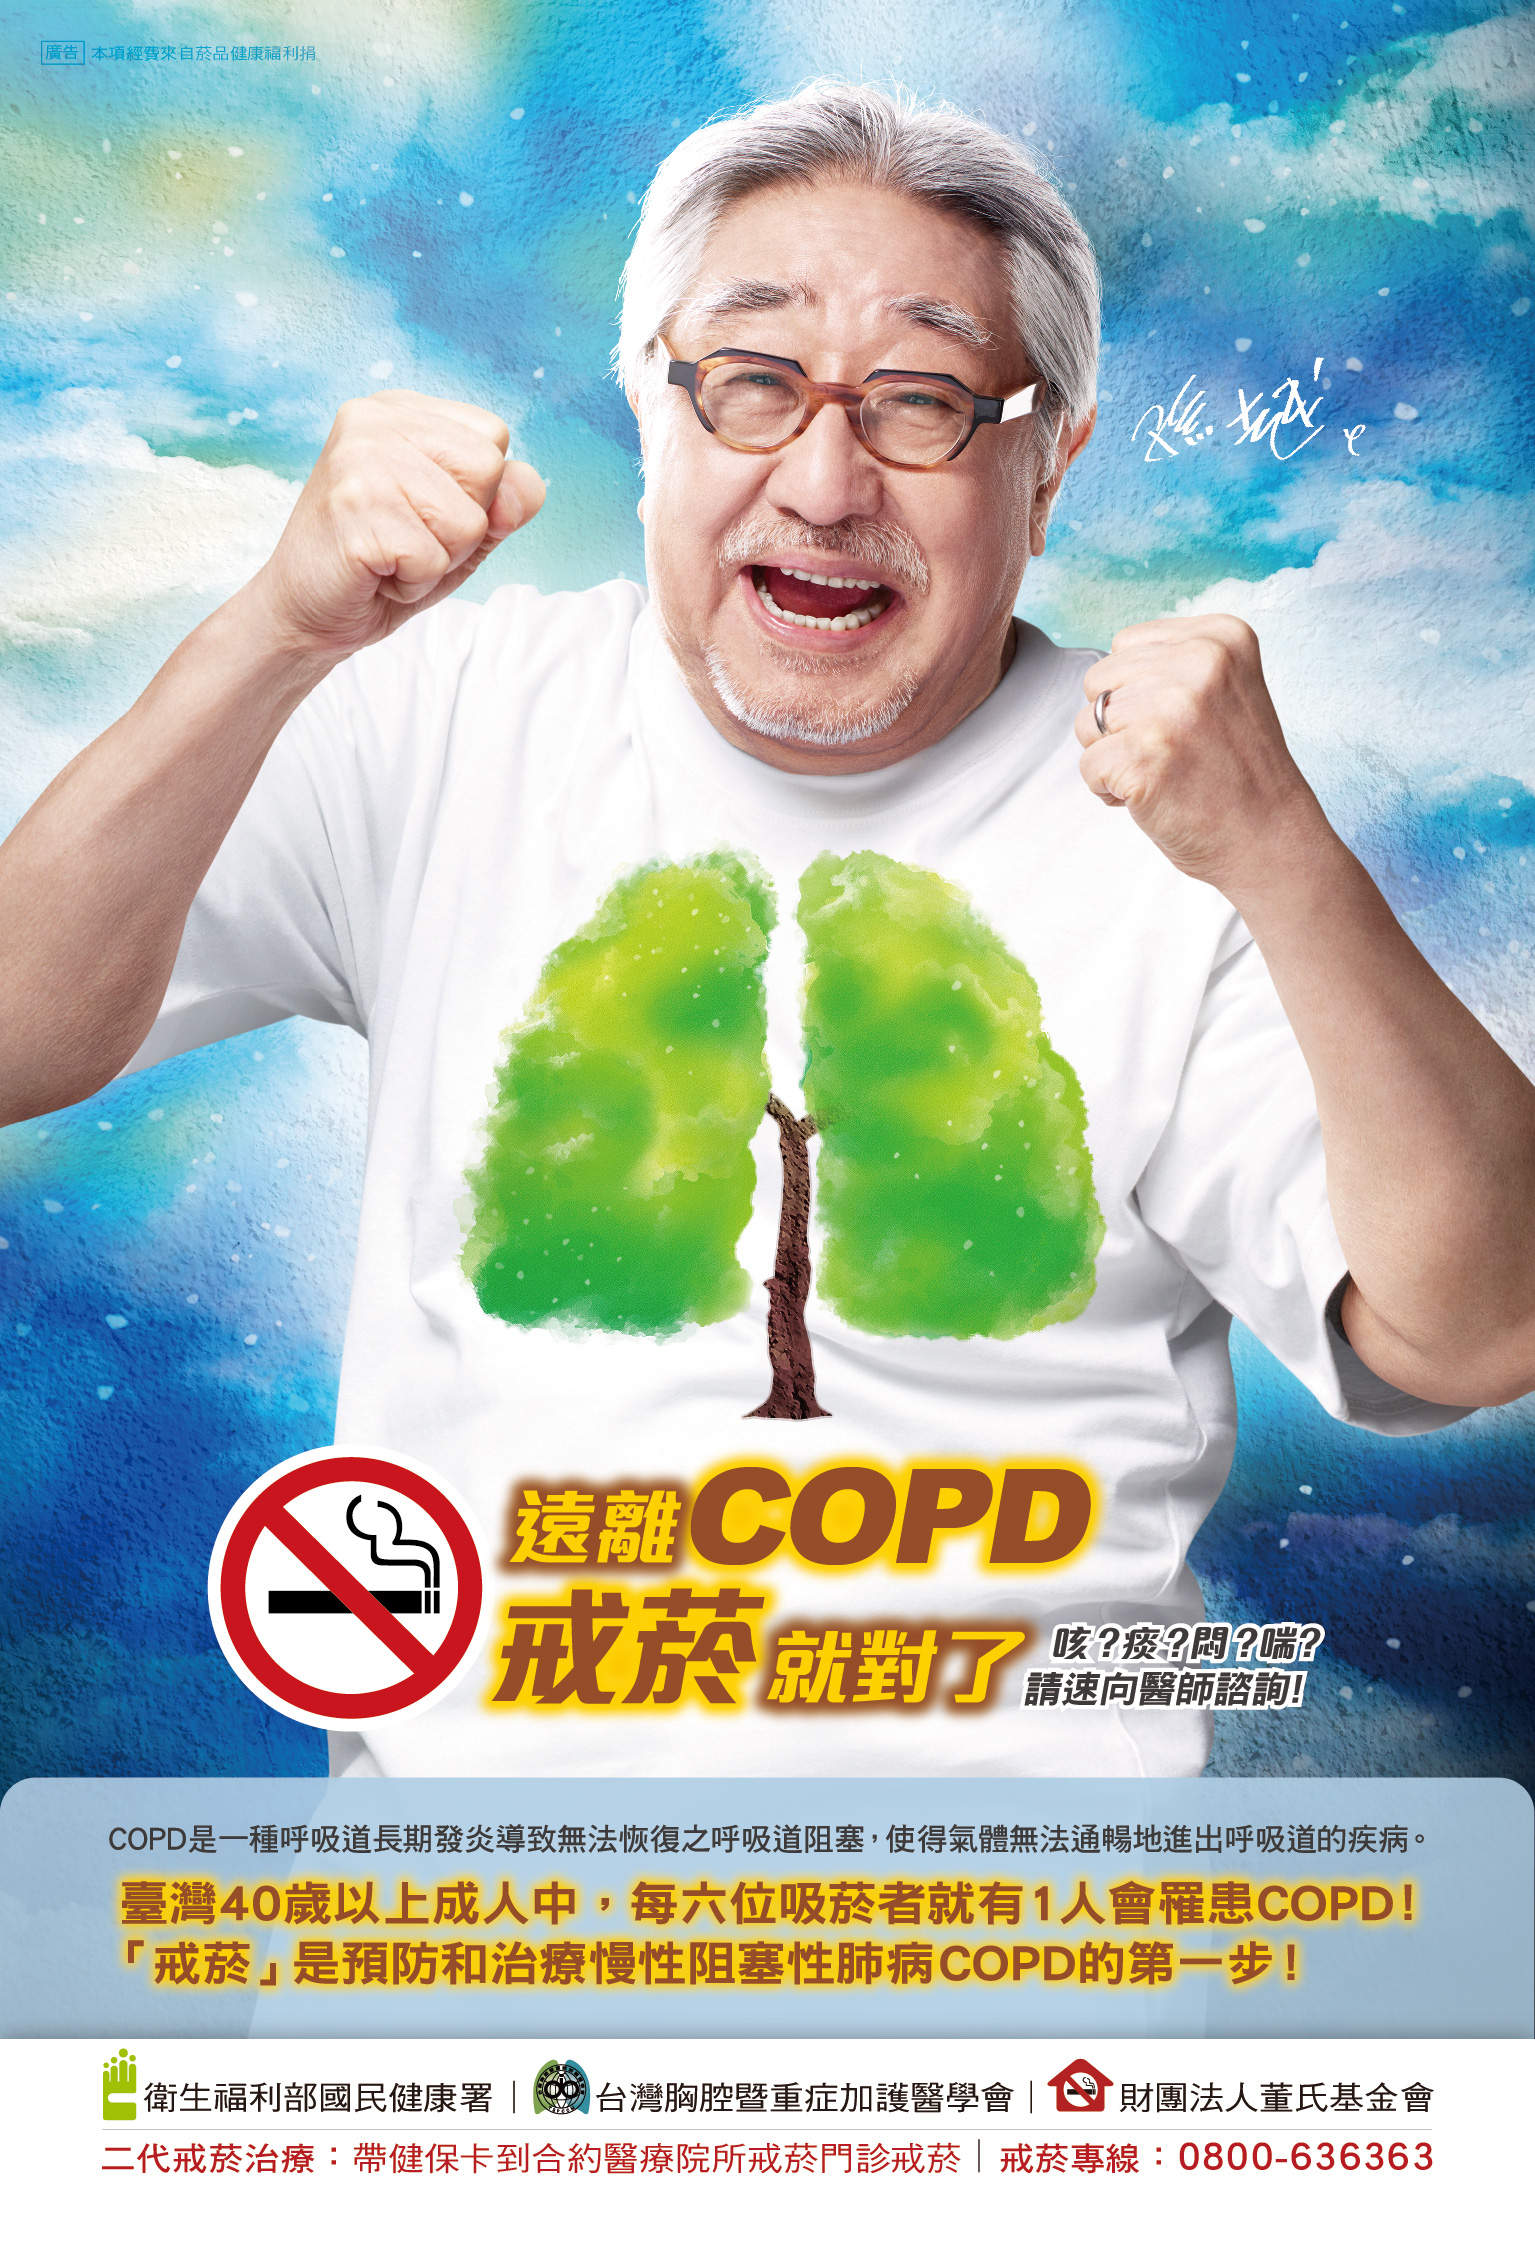 遠離COPD戒菸就對了 (海報)